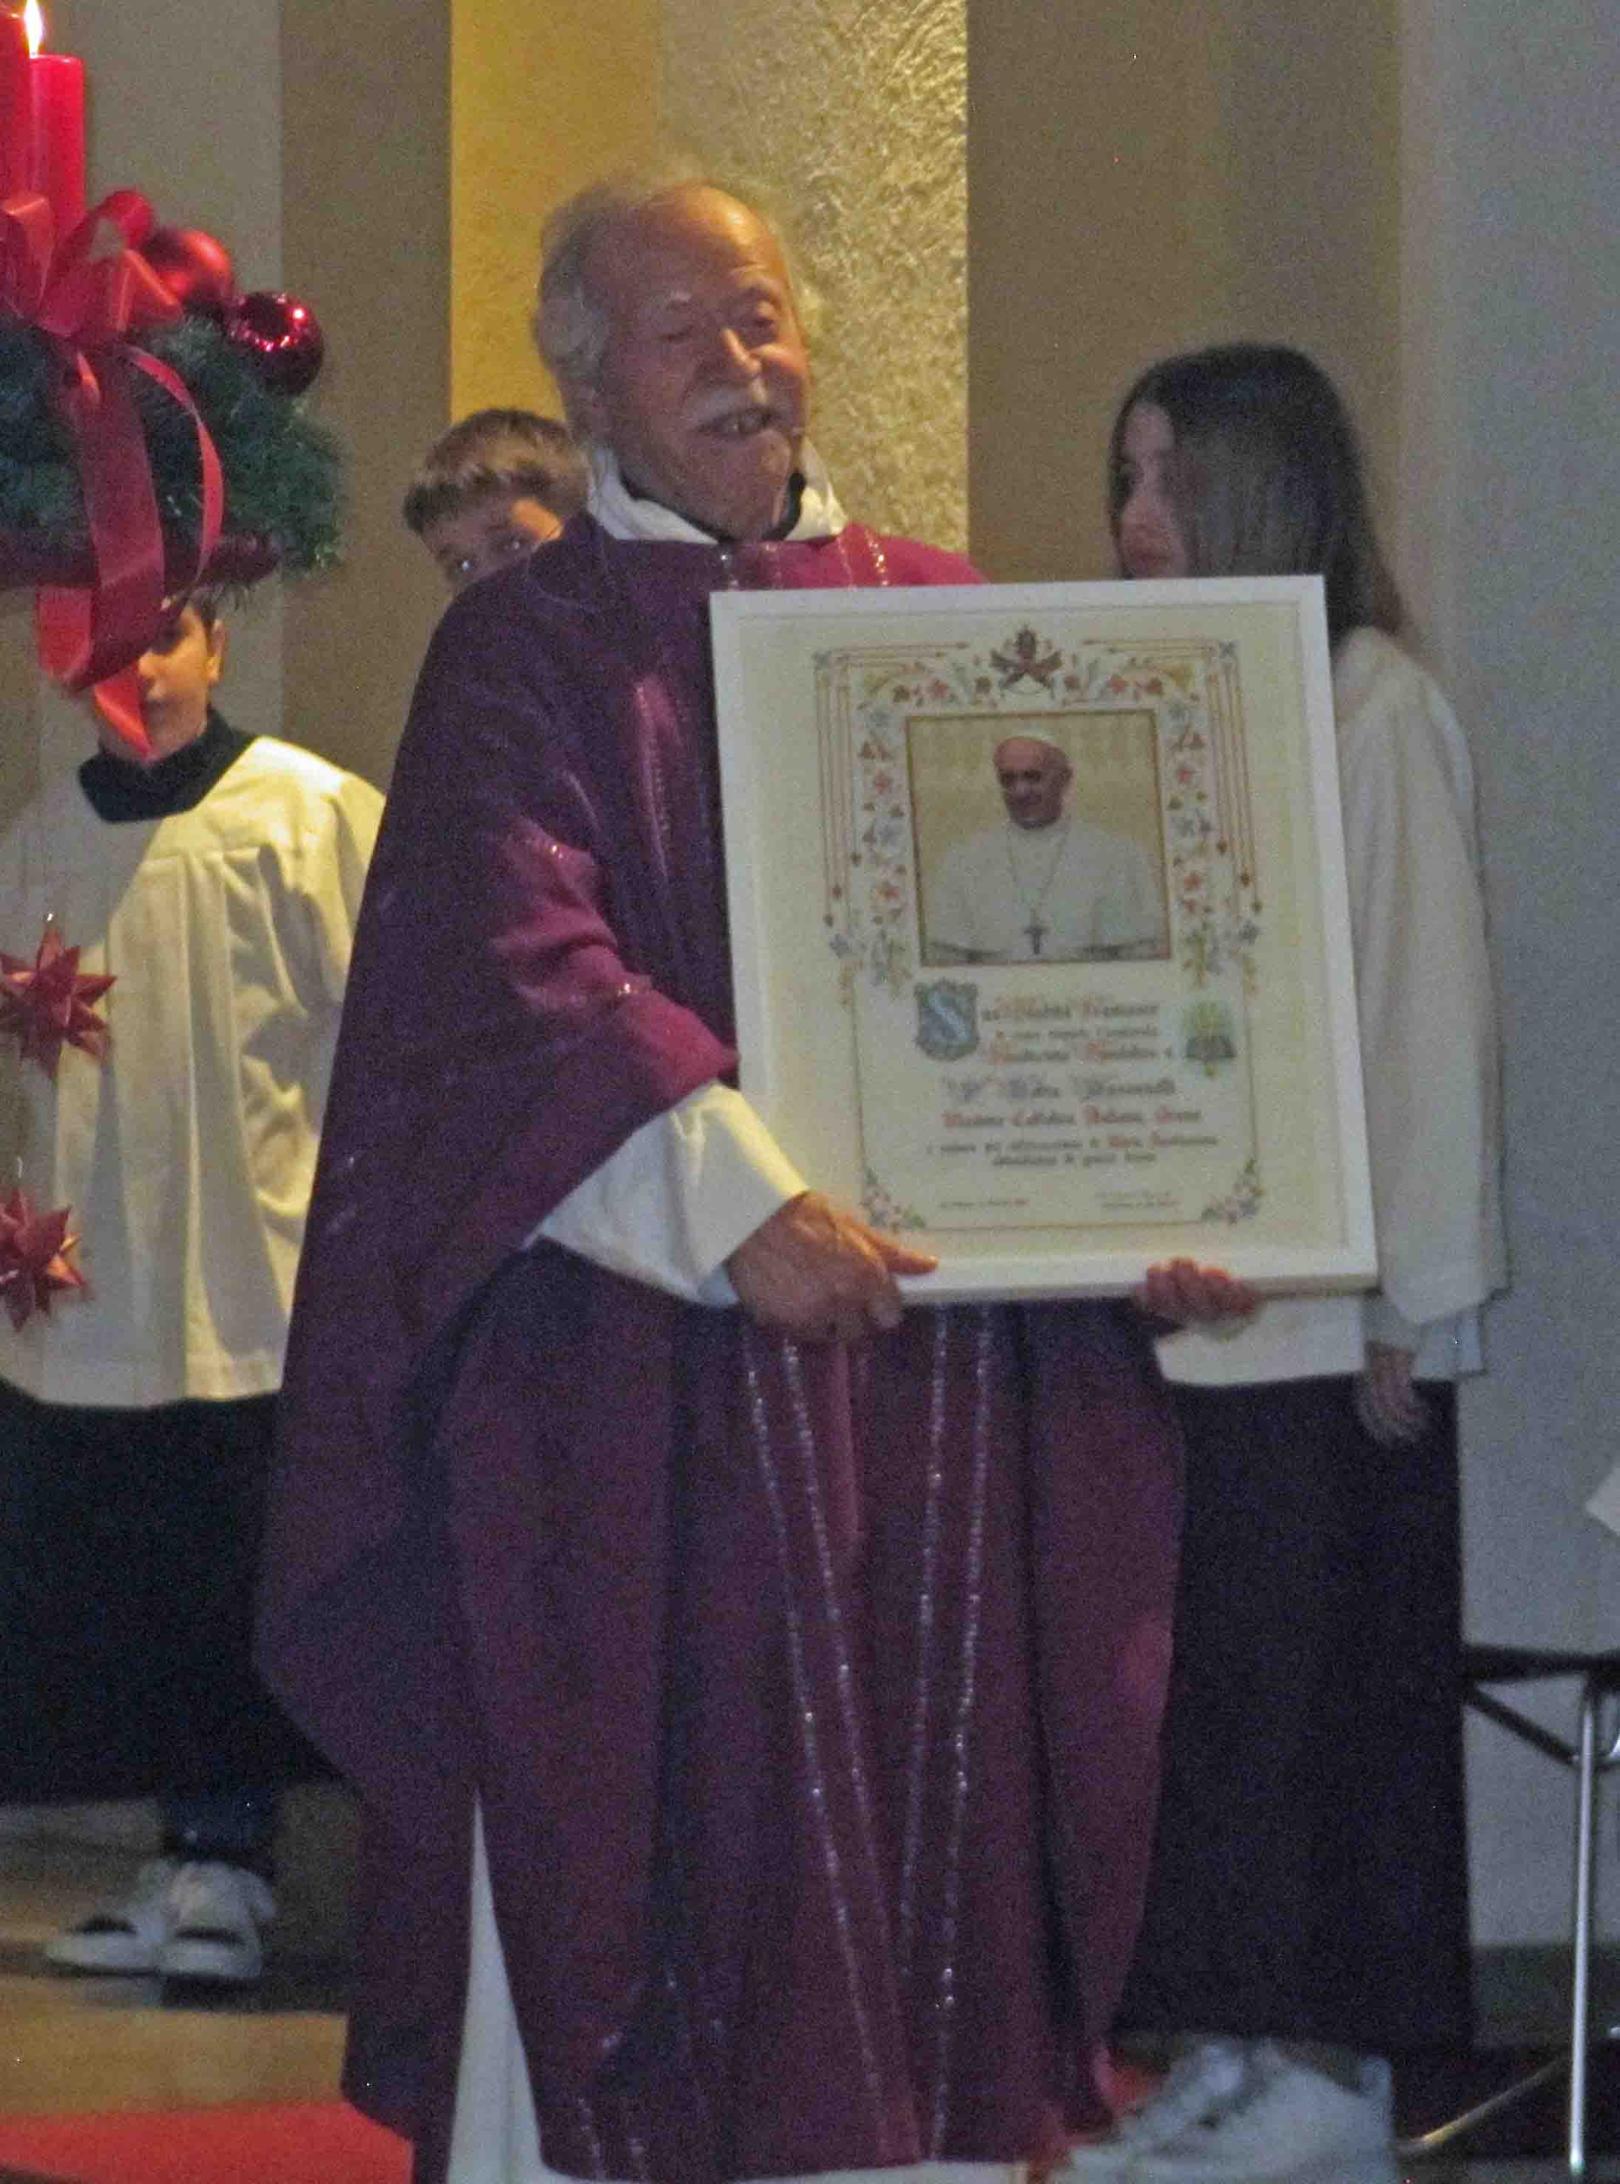 Groß-Gerau, 17. Dezember 2023: Padre Tobia mit der Urkunde des Heiligen Vaters. (c) Markus Schenk